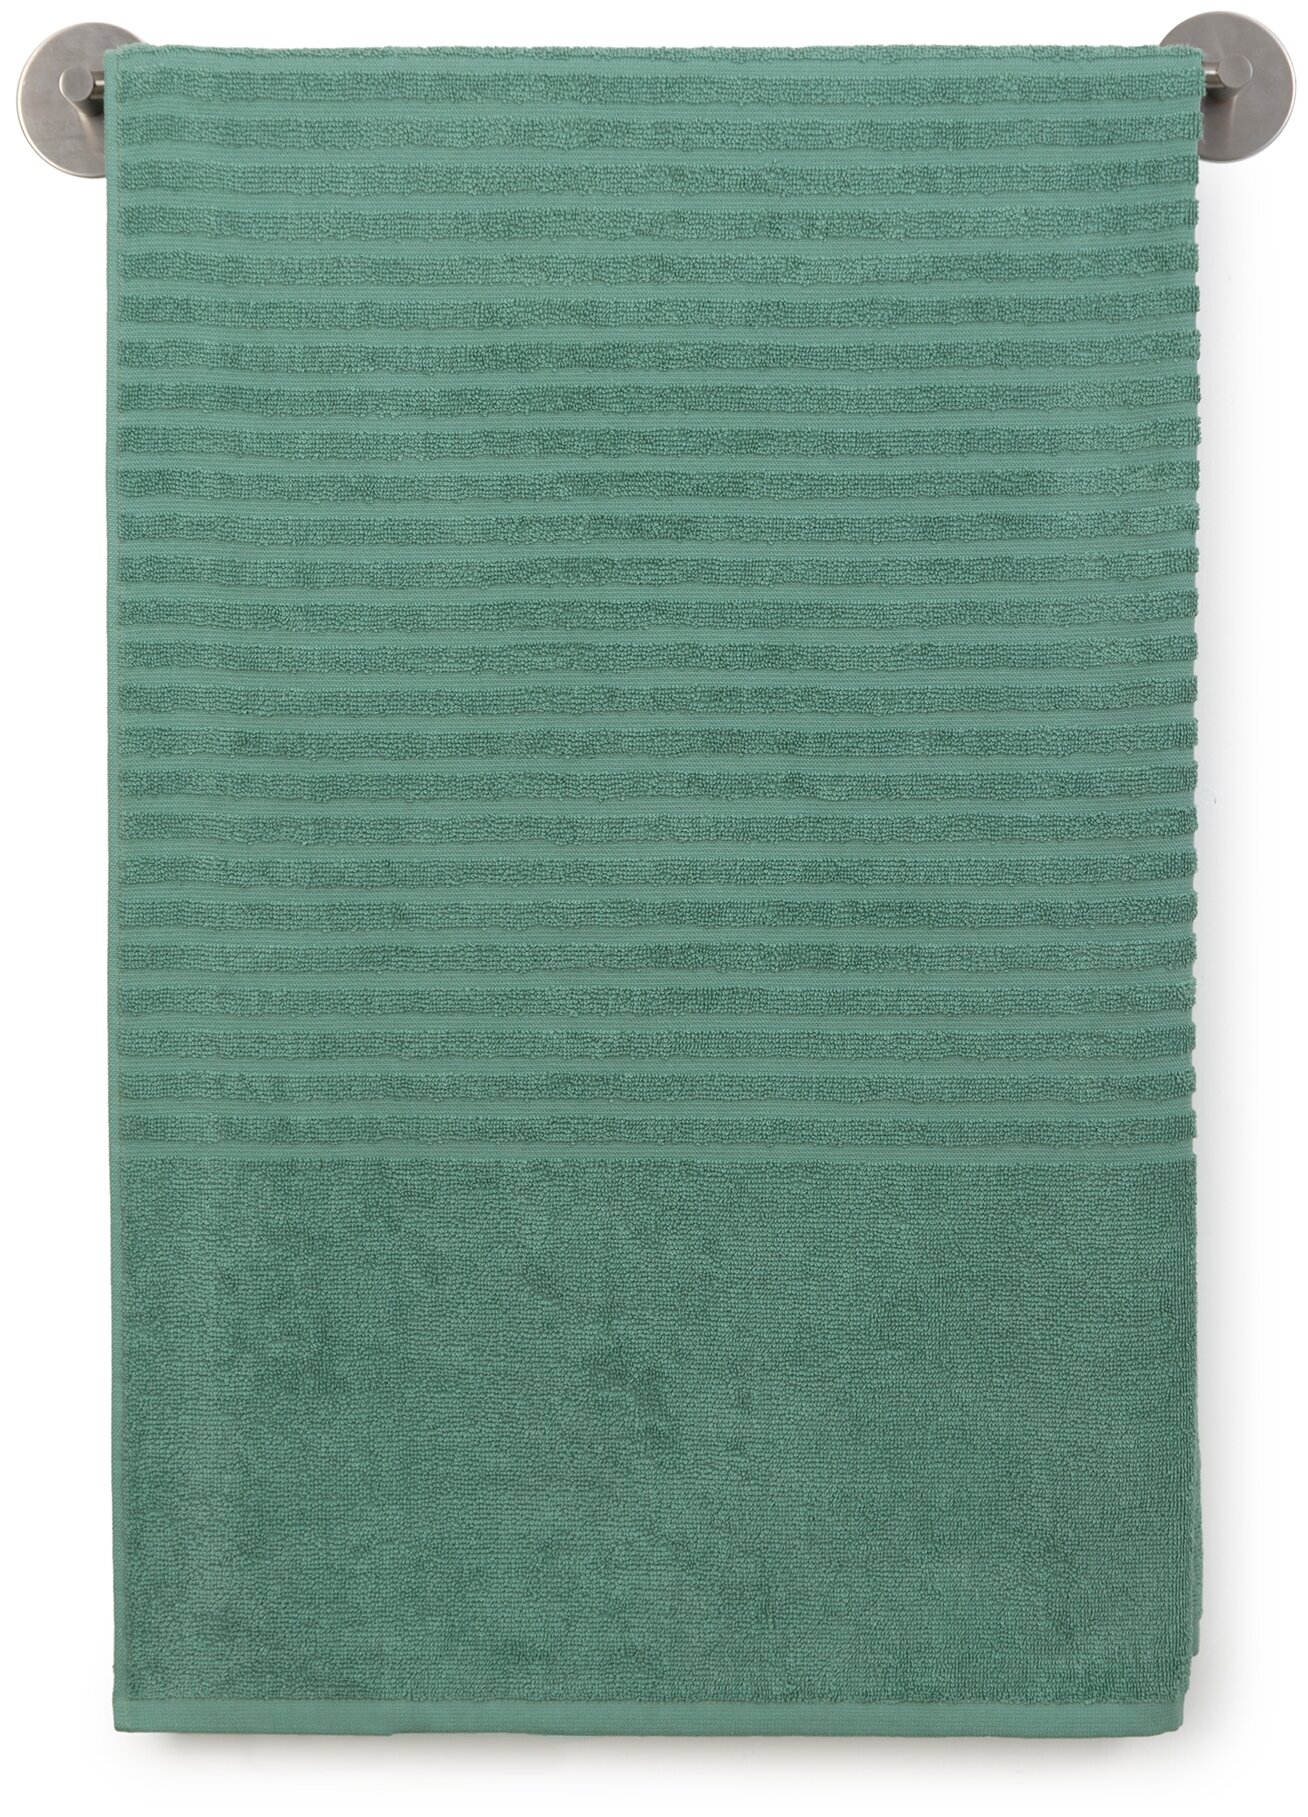 Полотенце банное,пляжное махровое, Донецкая мануфактура, 100х150 см., цвет:зеленая камея, 100% хлопок - фотография № 1